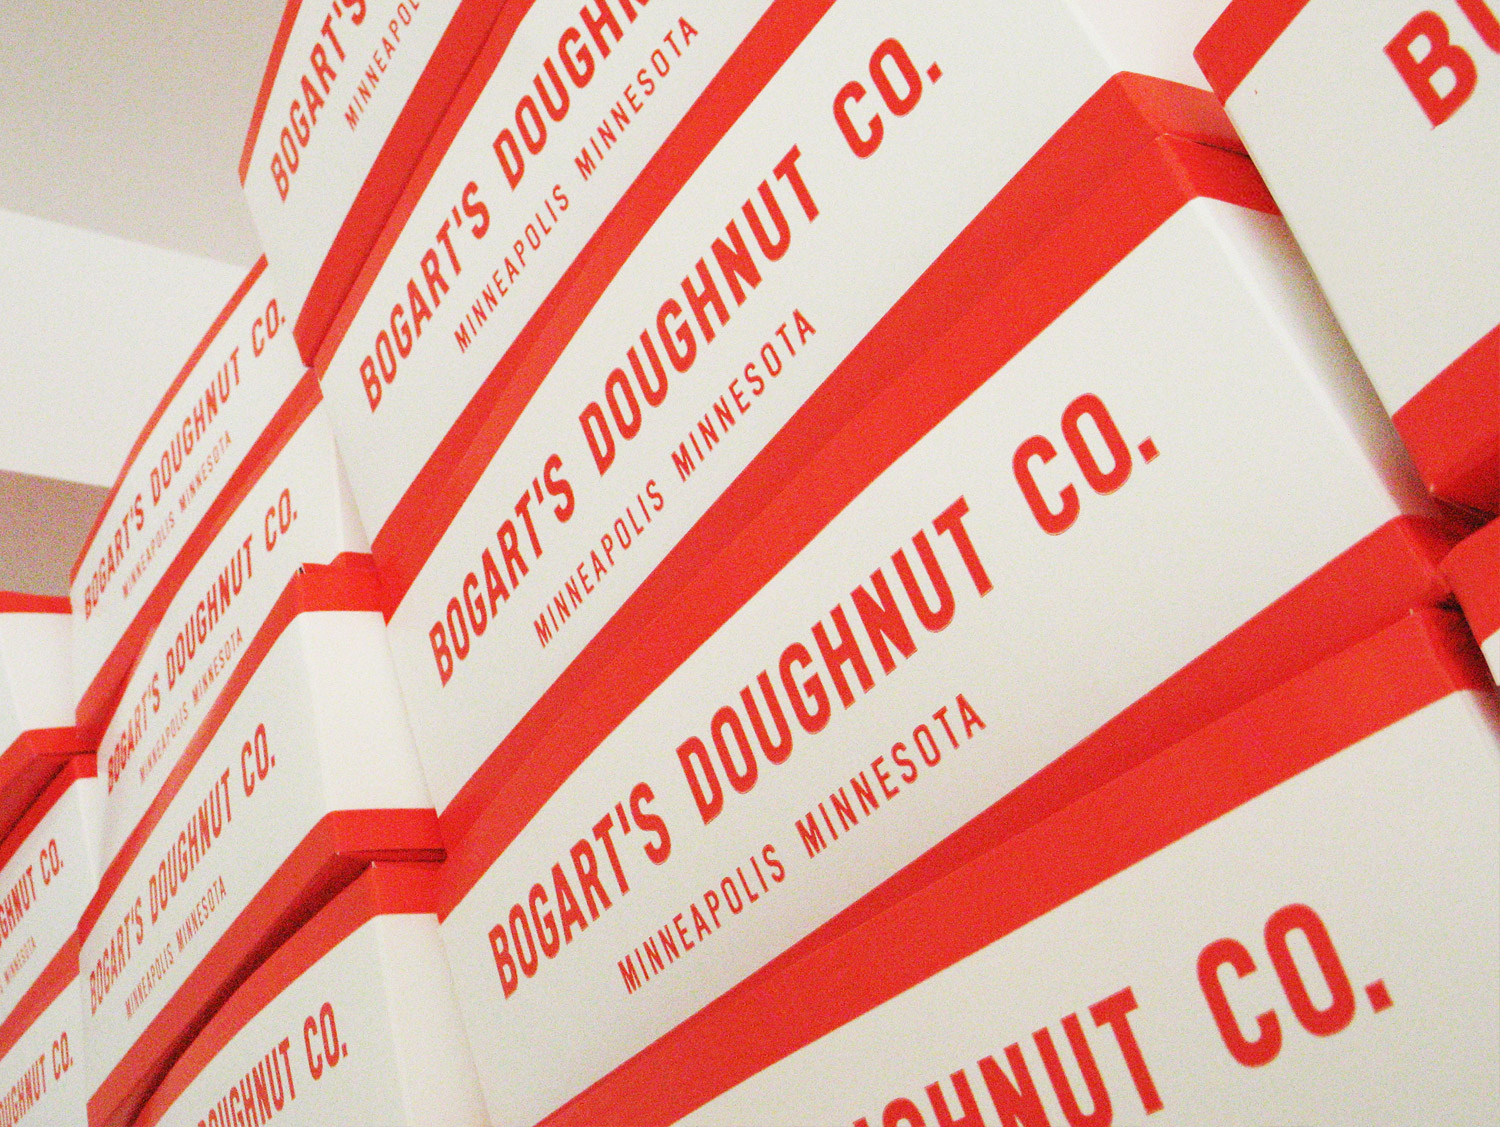 Bogarts-Doughnut-Co-04.jpg